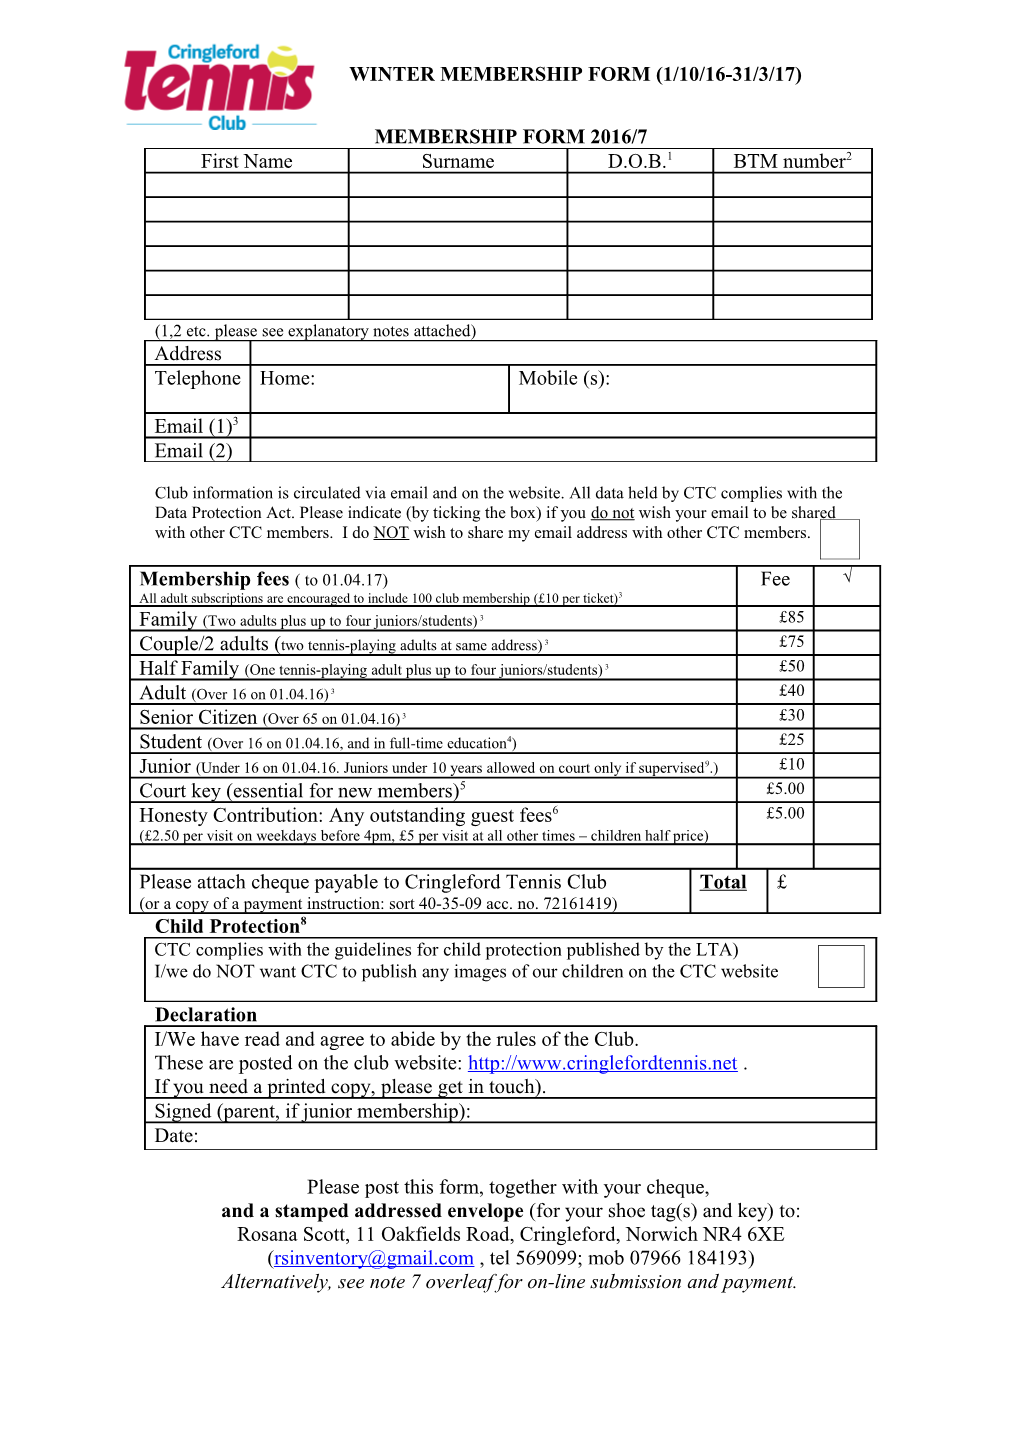 Cringleford Tennis Club Membership Form 2010/1